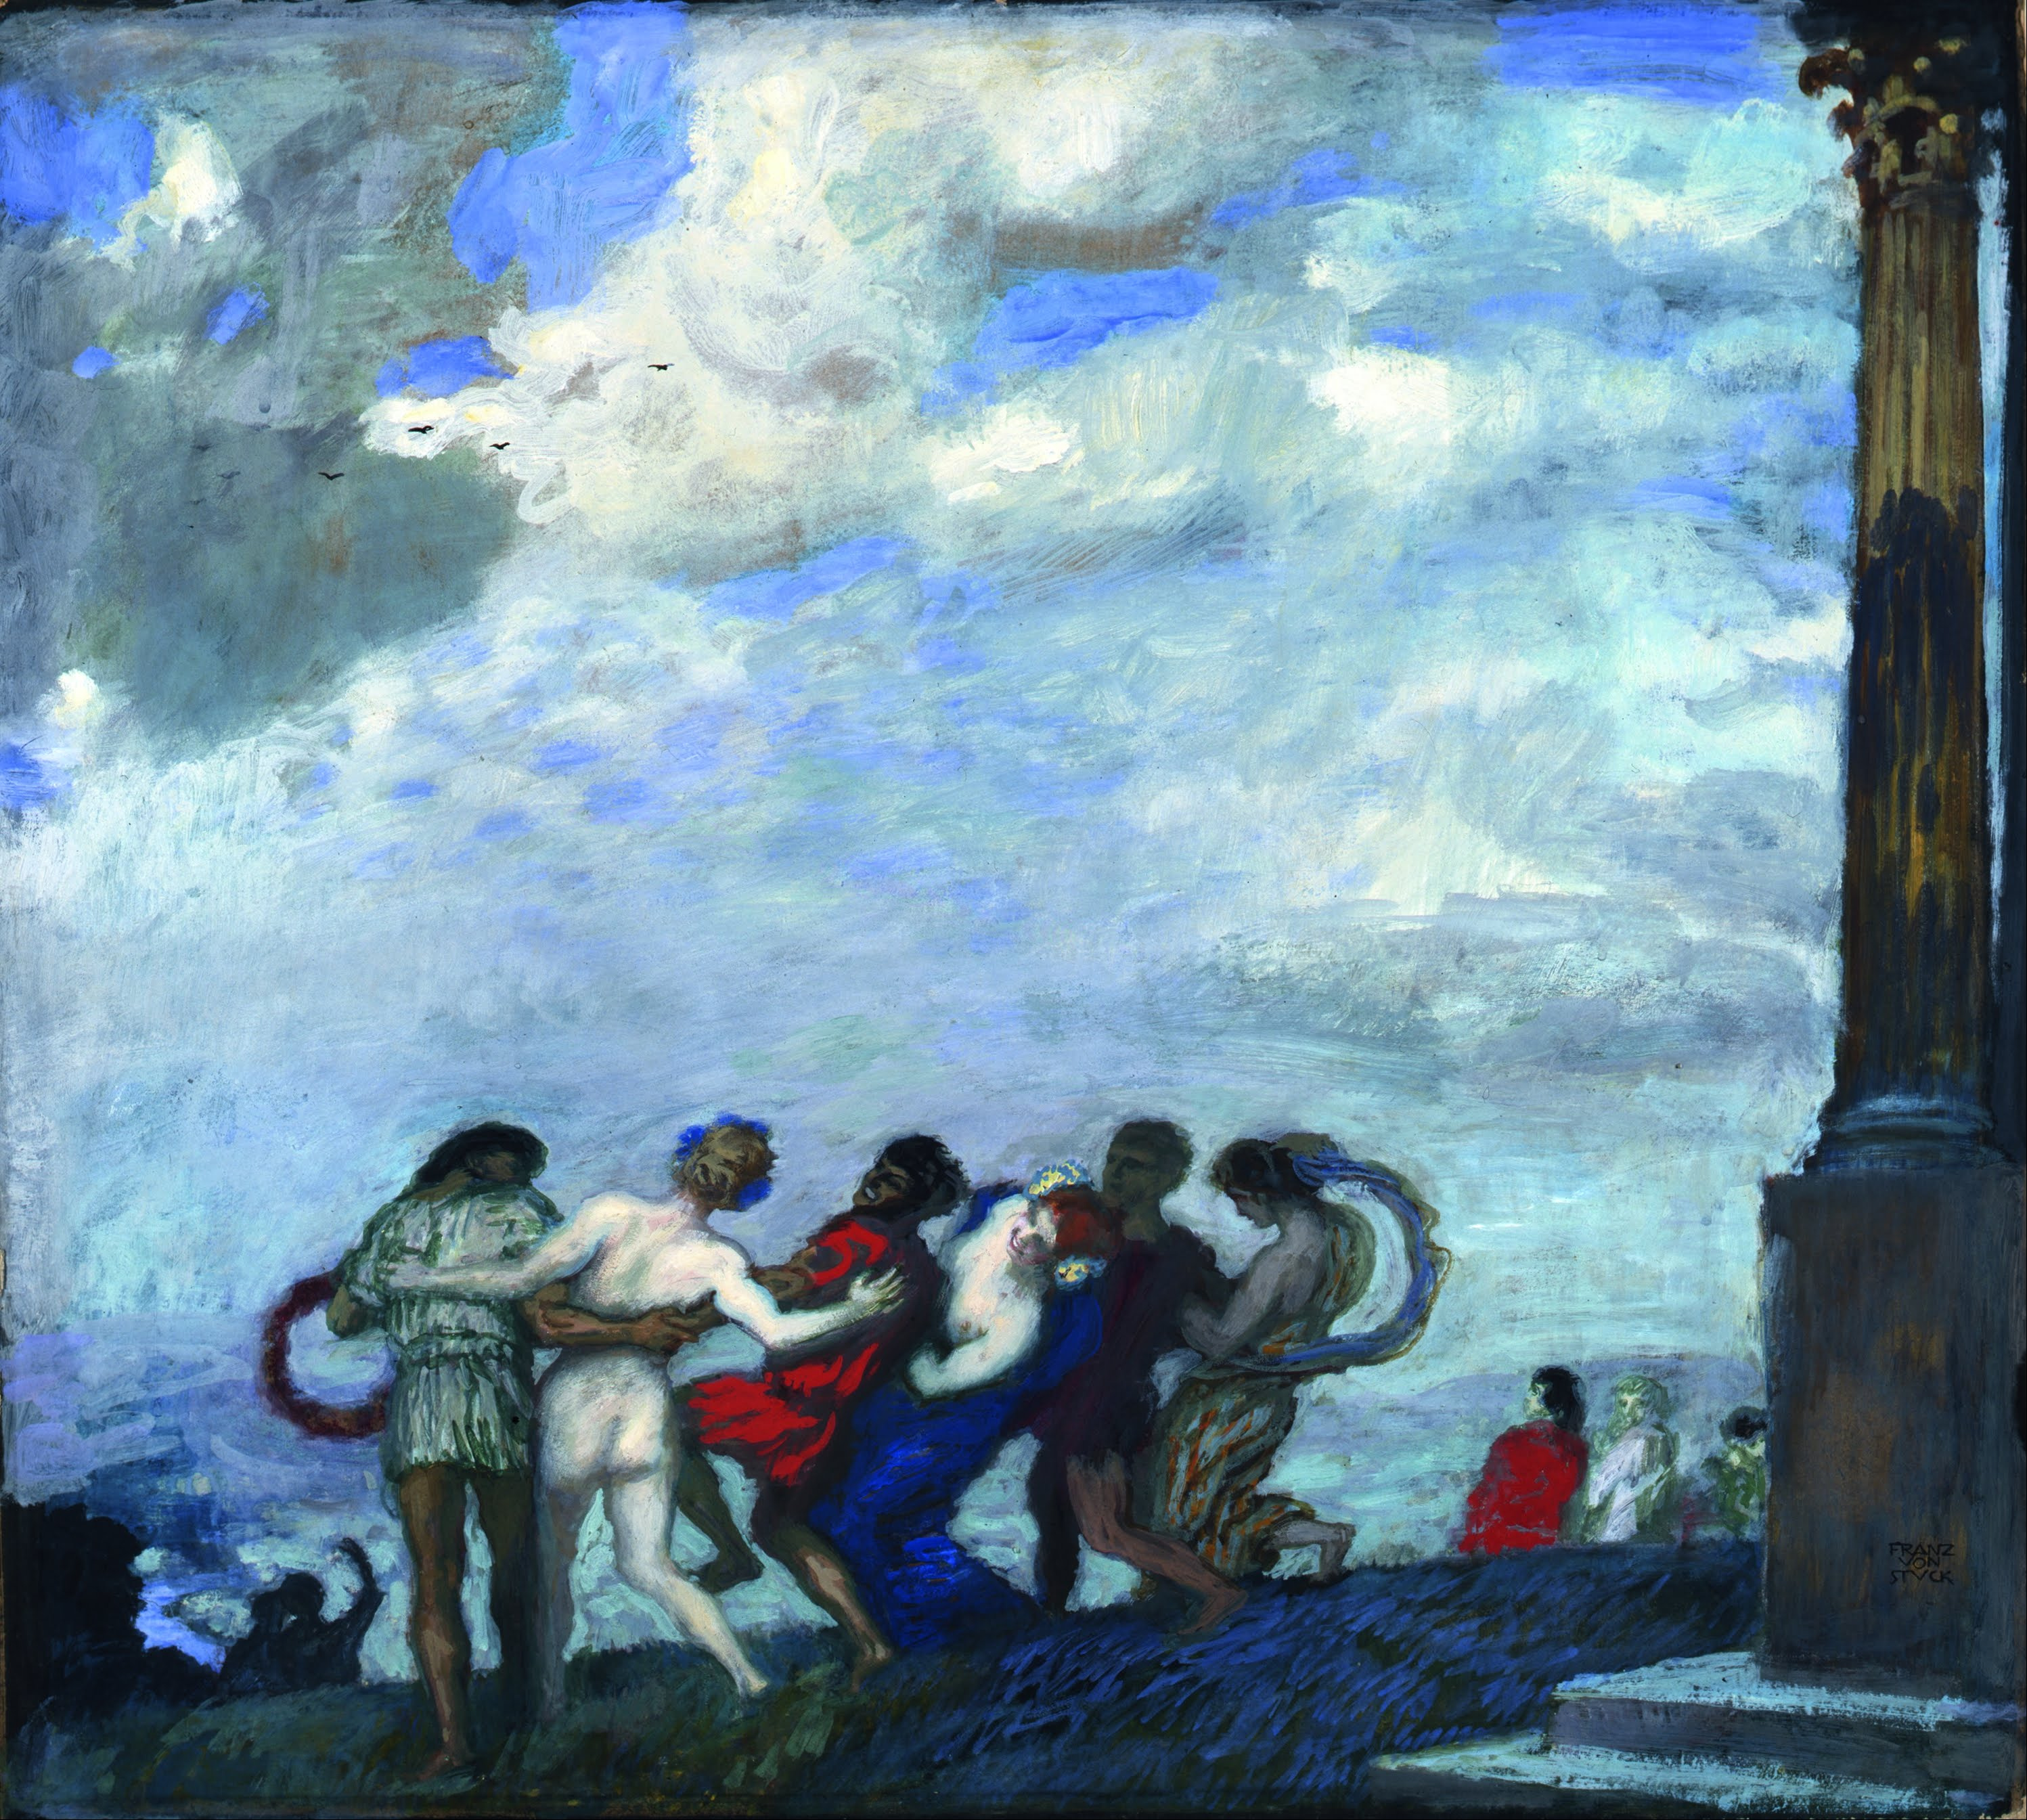 The Dance by Franz von Stuck - 1910 - 79.5 x 71 cm Museum Kunstpalast